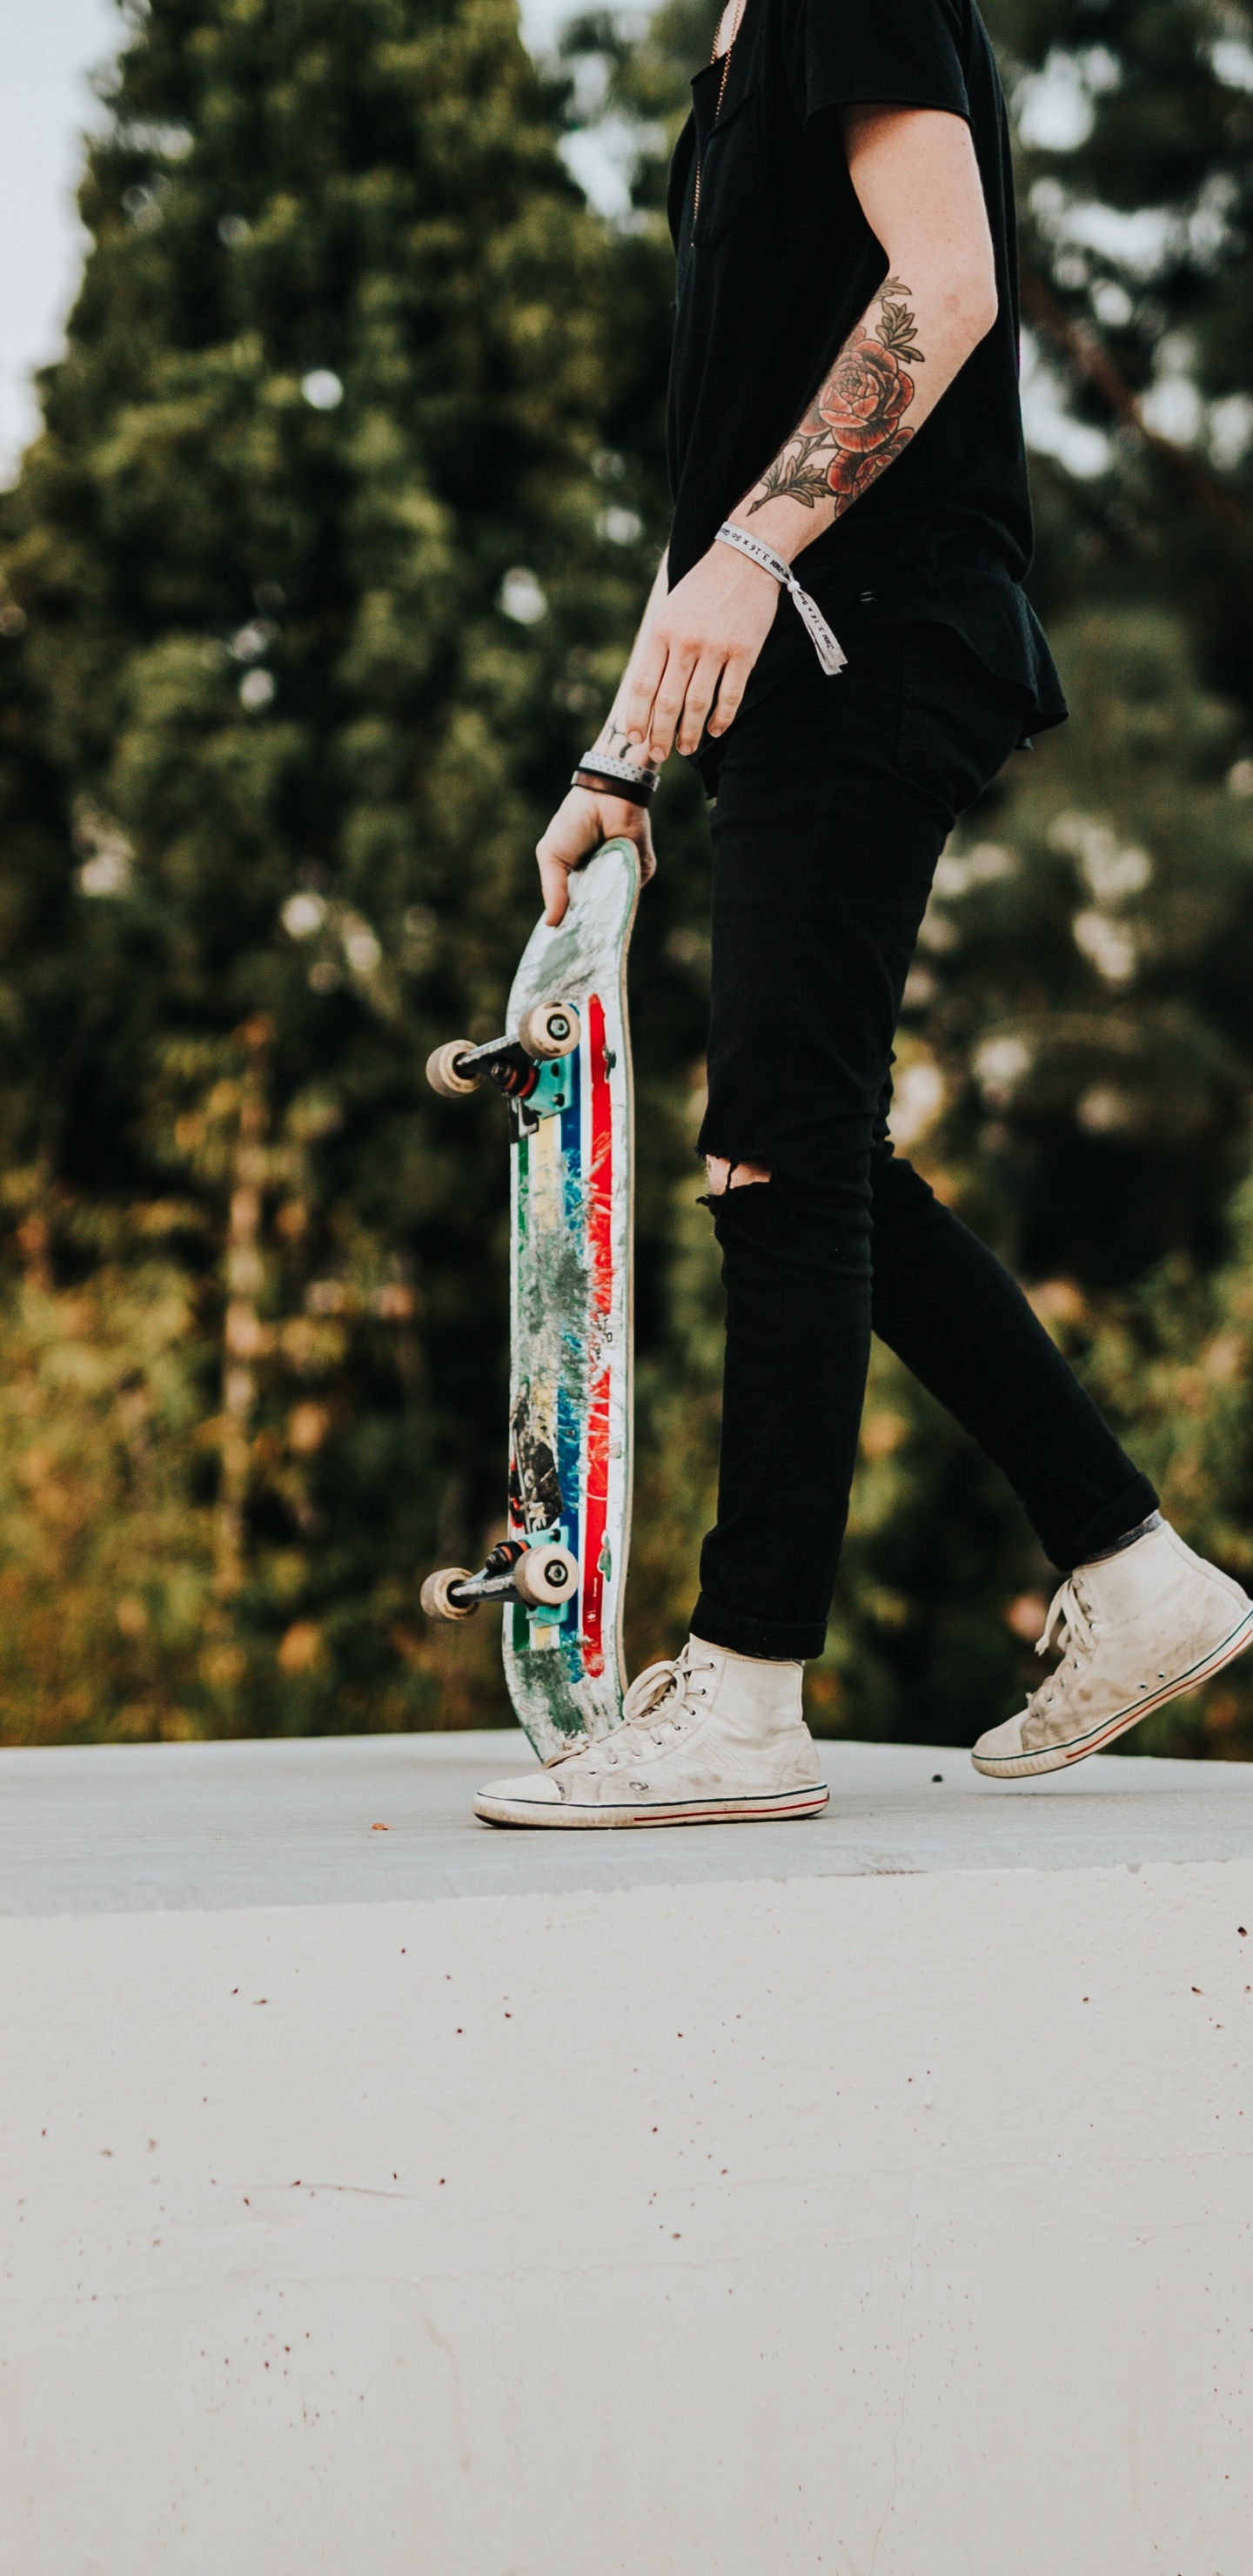 Mann in Schwarzer Hose Und Schwarzer Jacke, Der Skateboard Fährt. Wallpaper in 1440x2960 Resolution